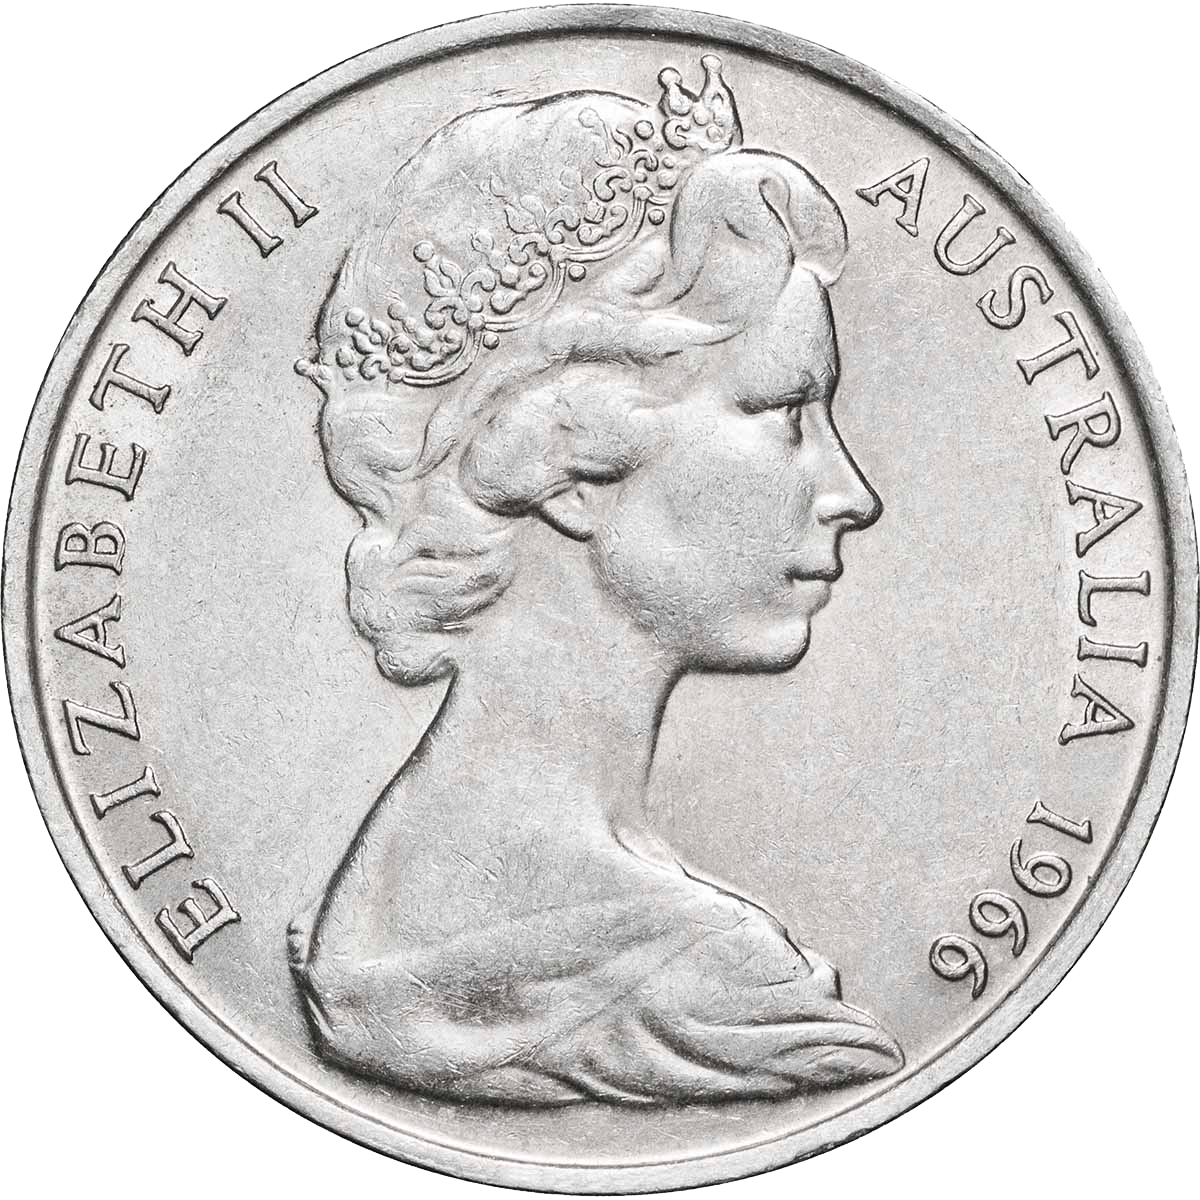 Australian 50c Queen Elizabeth II Portrait Collection